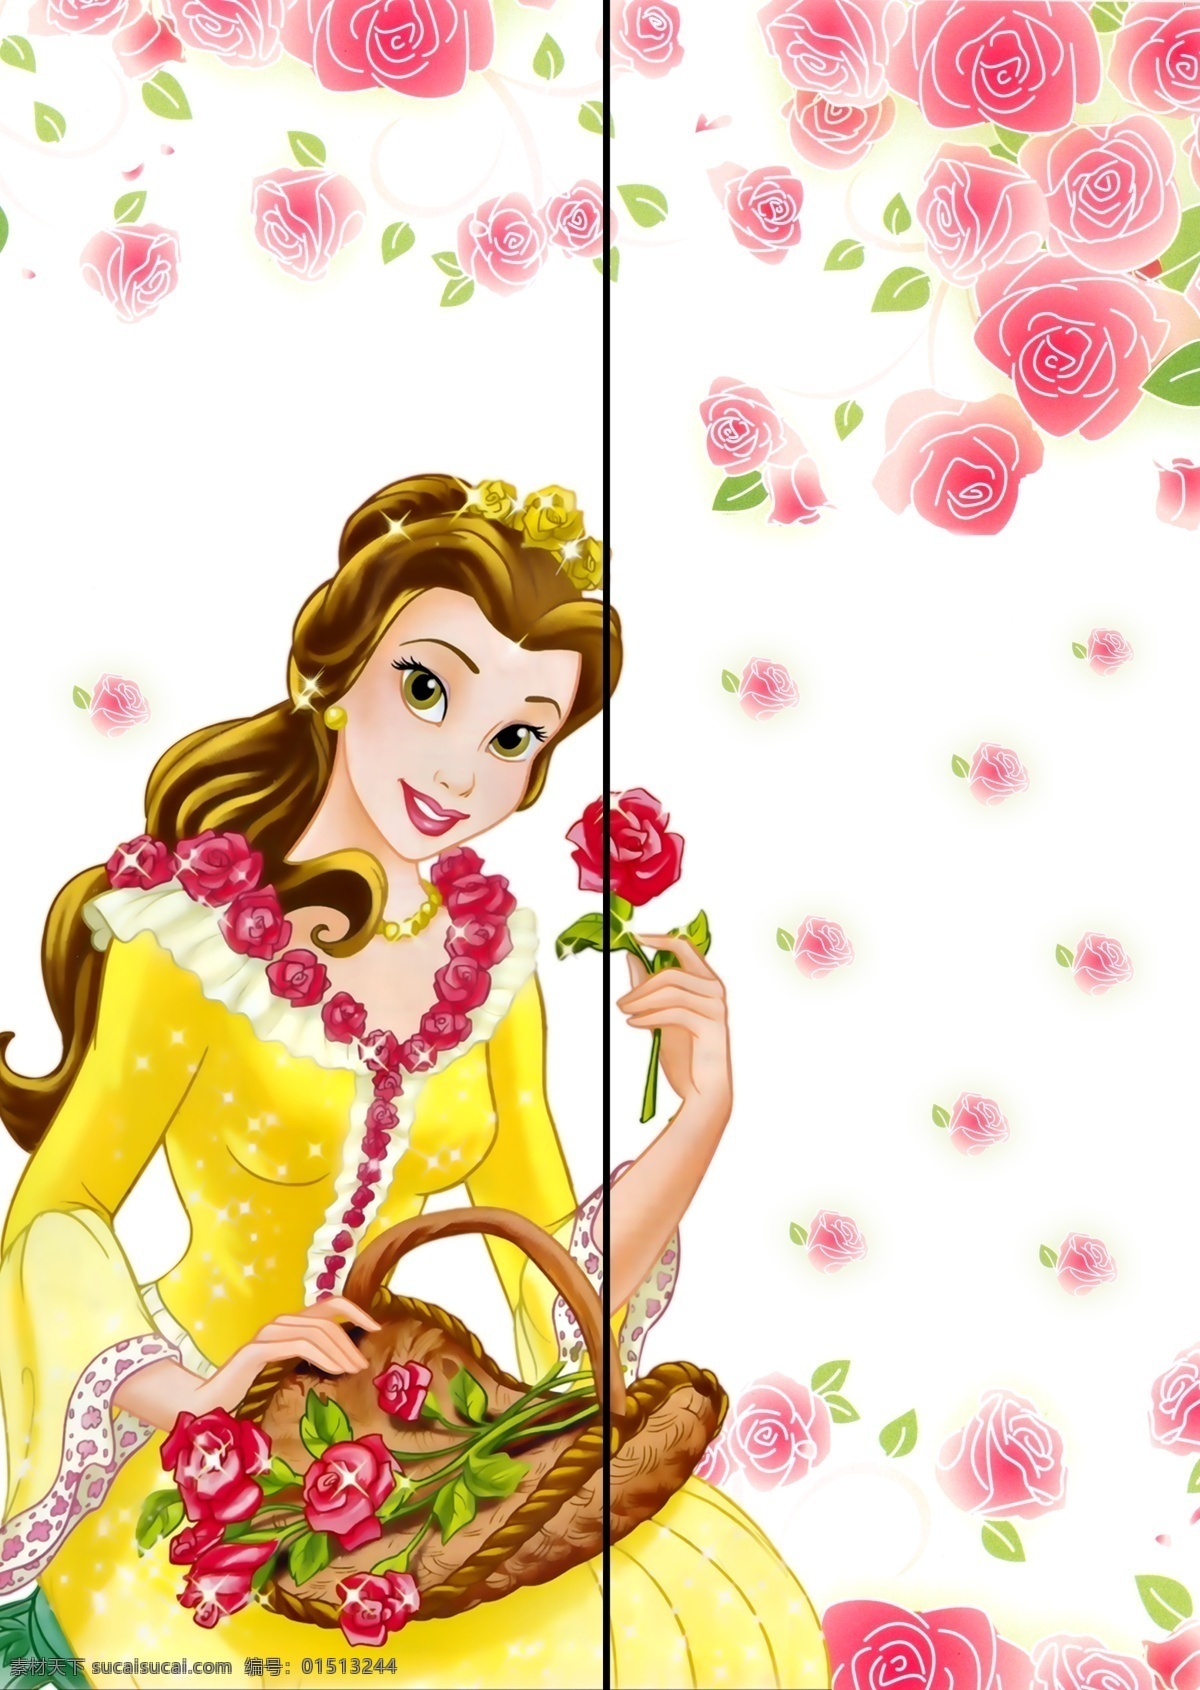 移门贝儿公主 移门 公主 贝儿 卡通 鲜花 玫瑰 花朵 漂亮 移门图案 广告设计模板 源文件 底纹边框